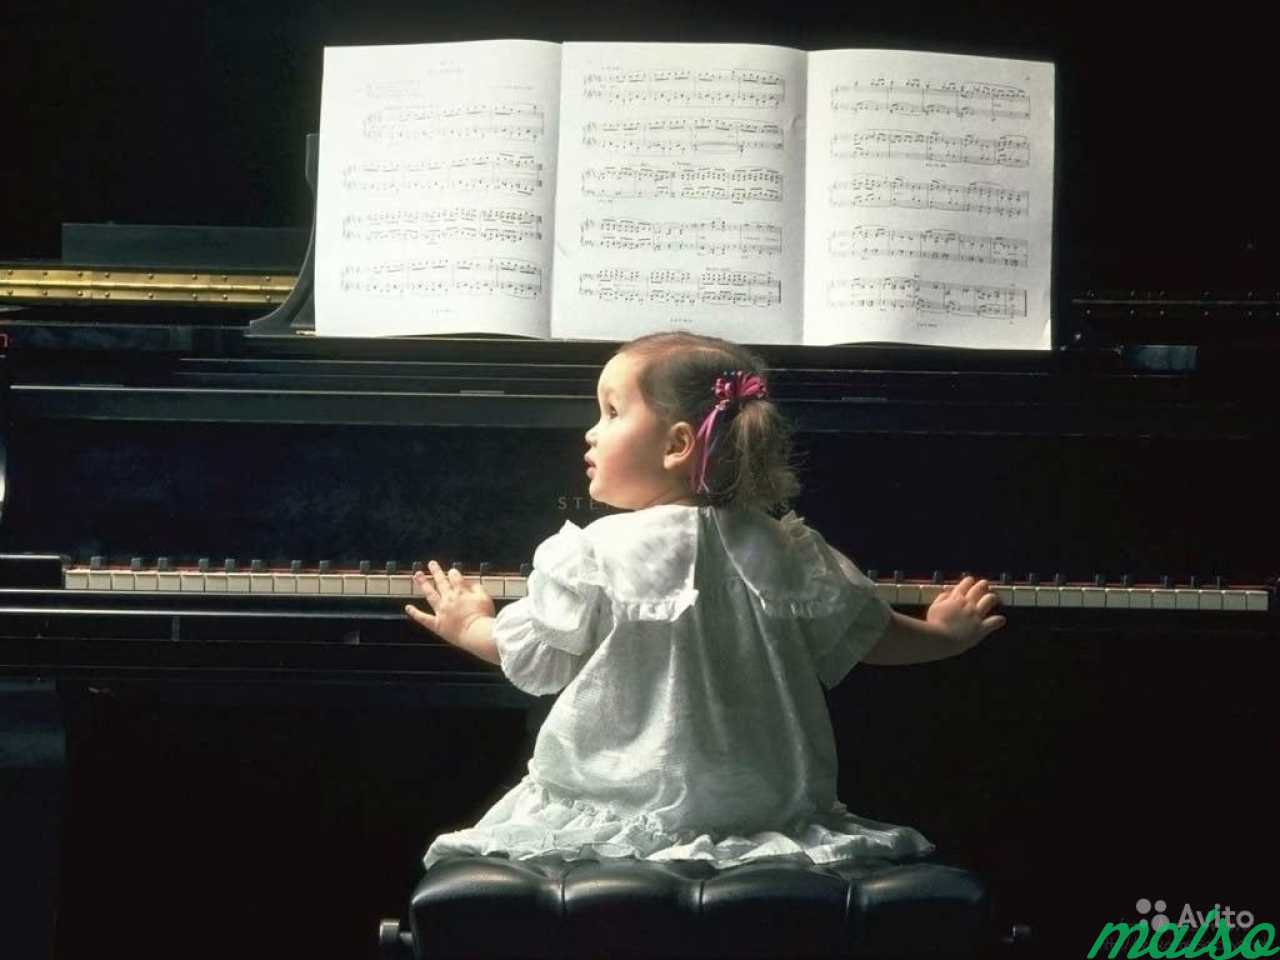 Музыкальная жизнь дети. Музыкальные инструменты для детей. Фортепиано для детей. Ребенок за роялем. Музыкальная классика для детей.